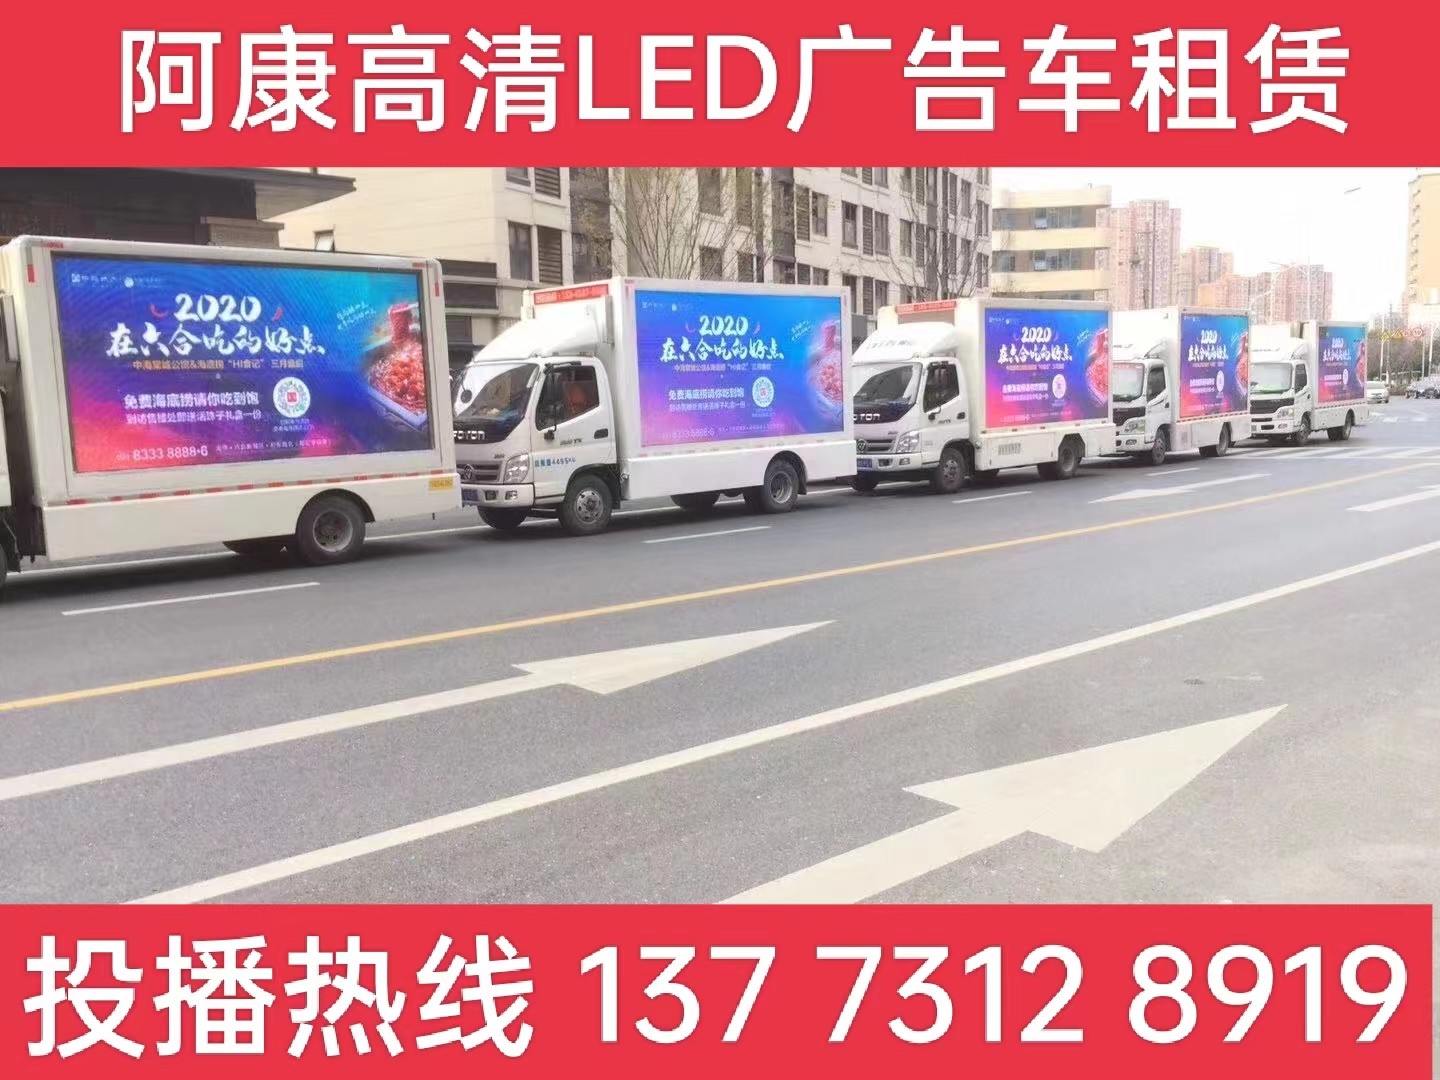 宁国宣传车出租-海底捞LED广告